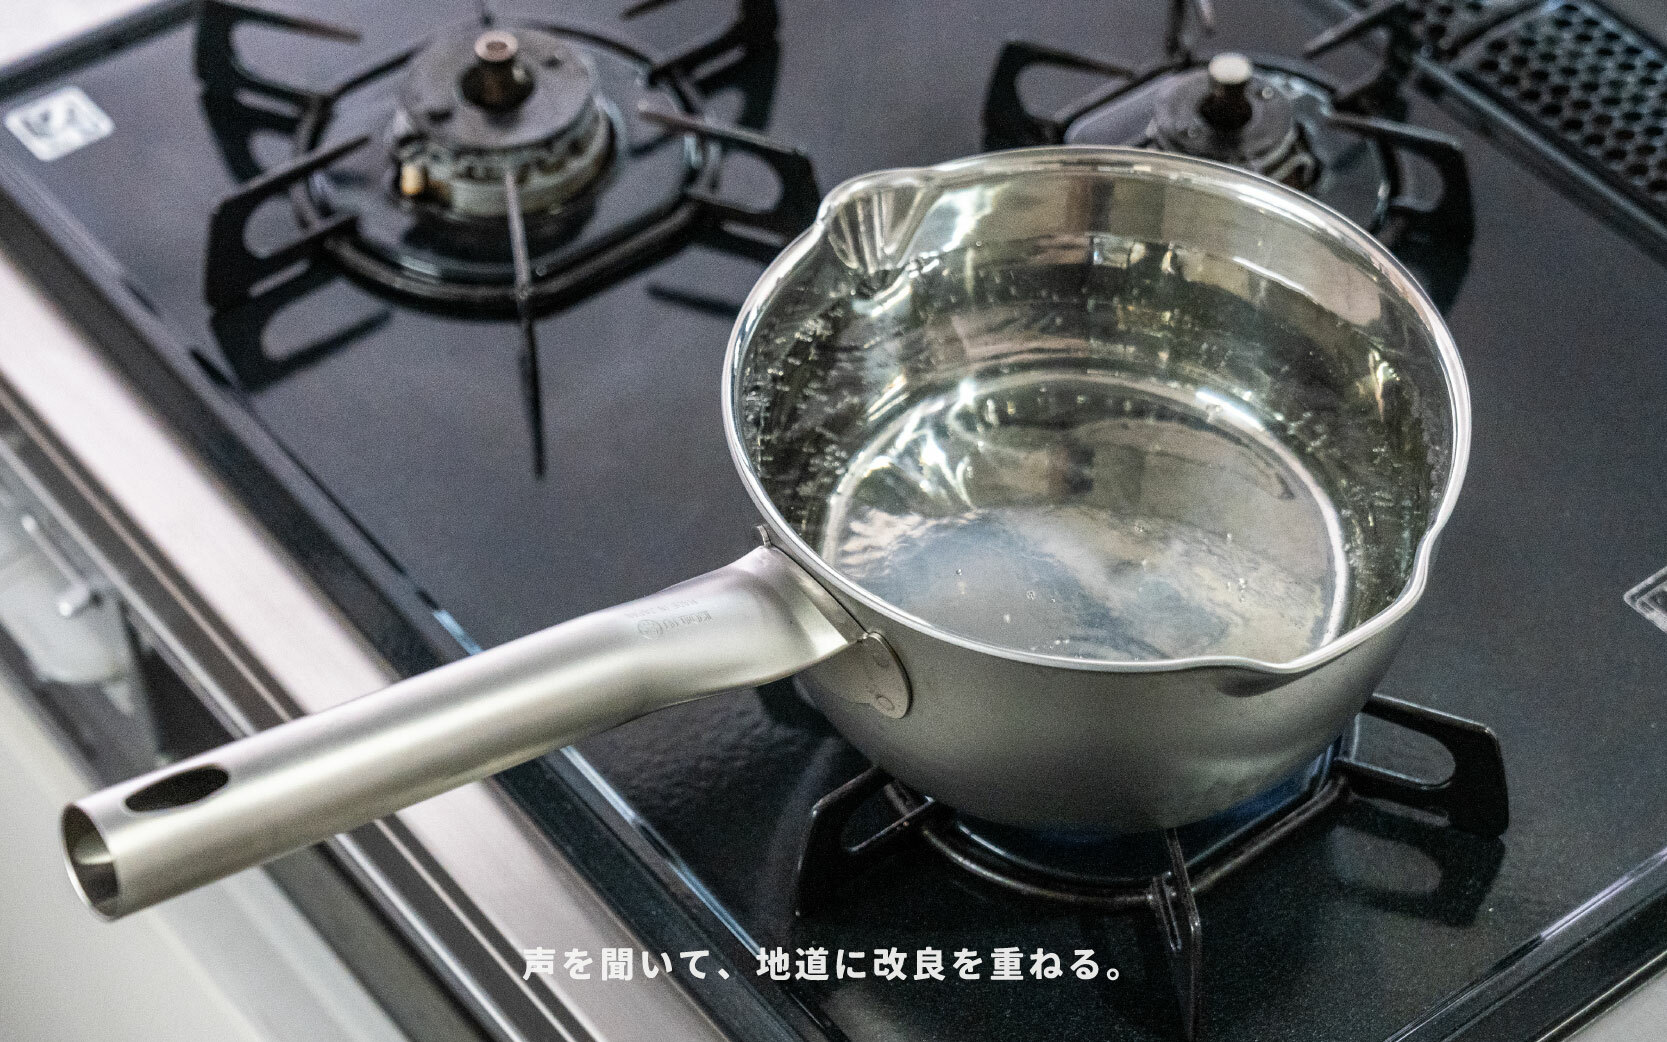 嘖嘖| 日本燕三条製【仔犬印· 職人鏡面雪平鍋】超過半世紀備受信賴的 